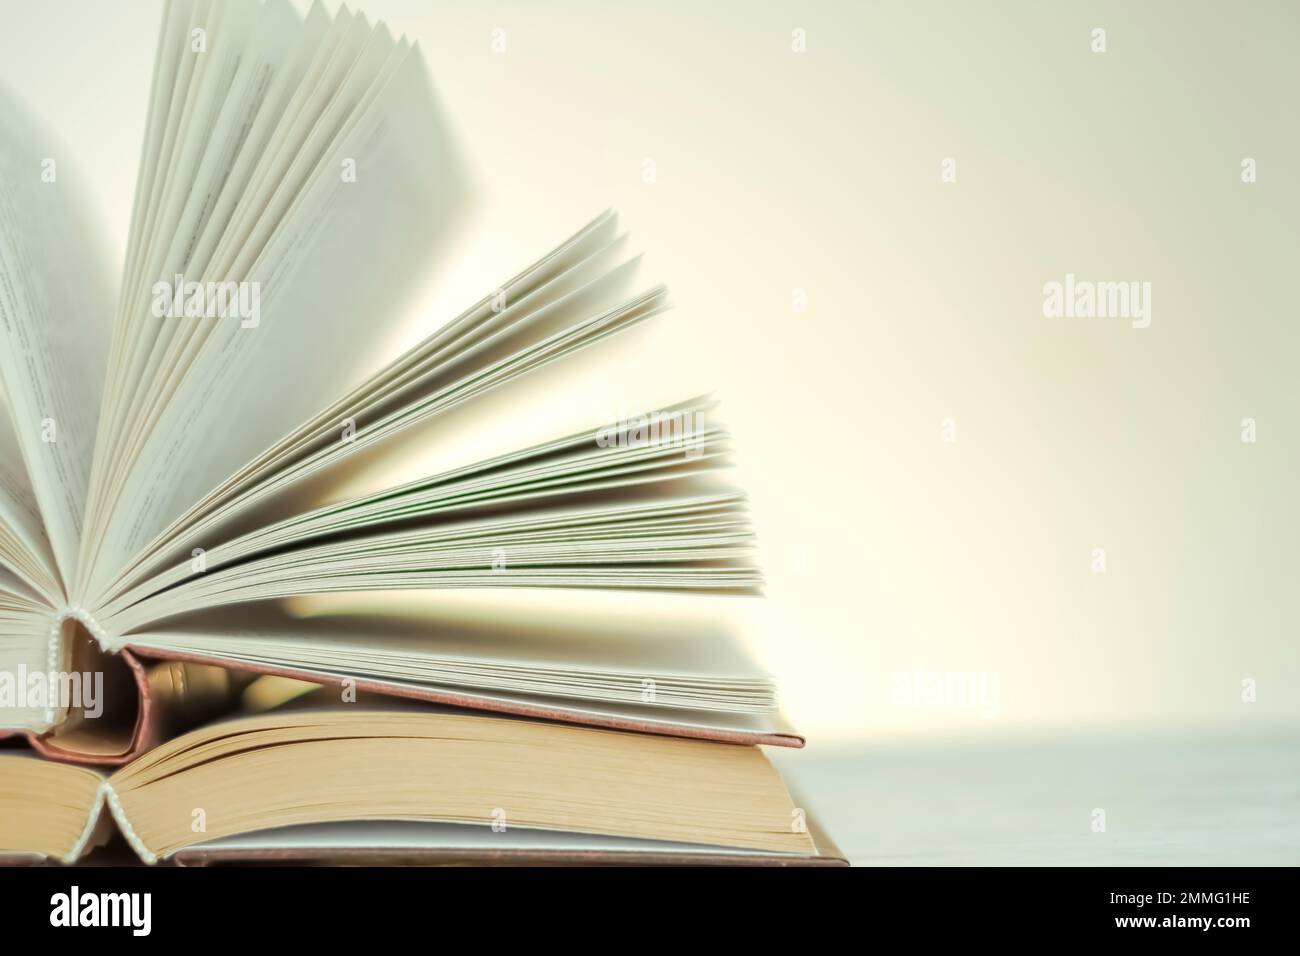 Lettura ed educazione. Apri i libri su uno sfondo chiaro con un gradiente giallo.pila di libri su un tavolo di legno.apprendimento e simbolo della conoscenza Foto Stock